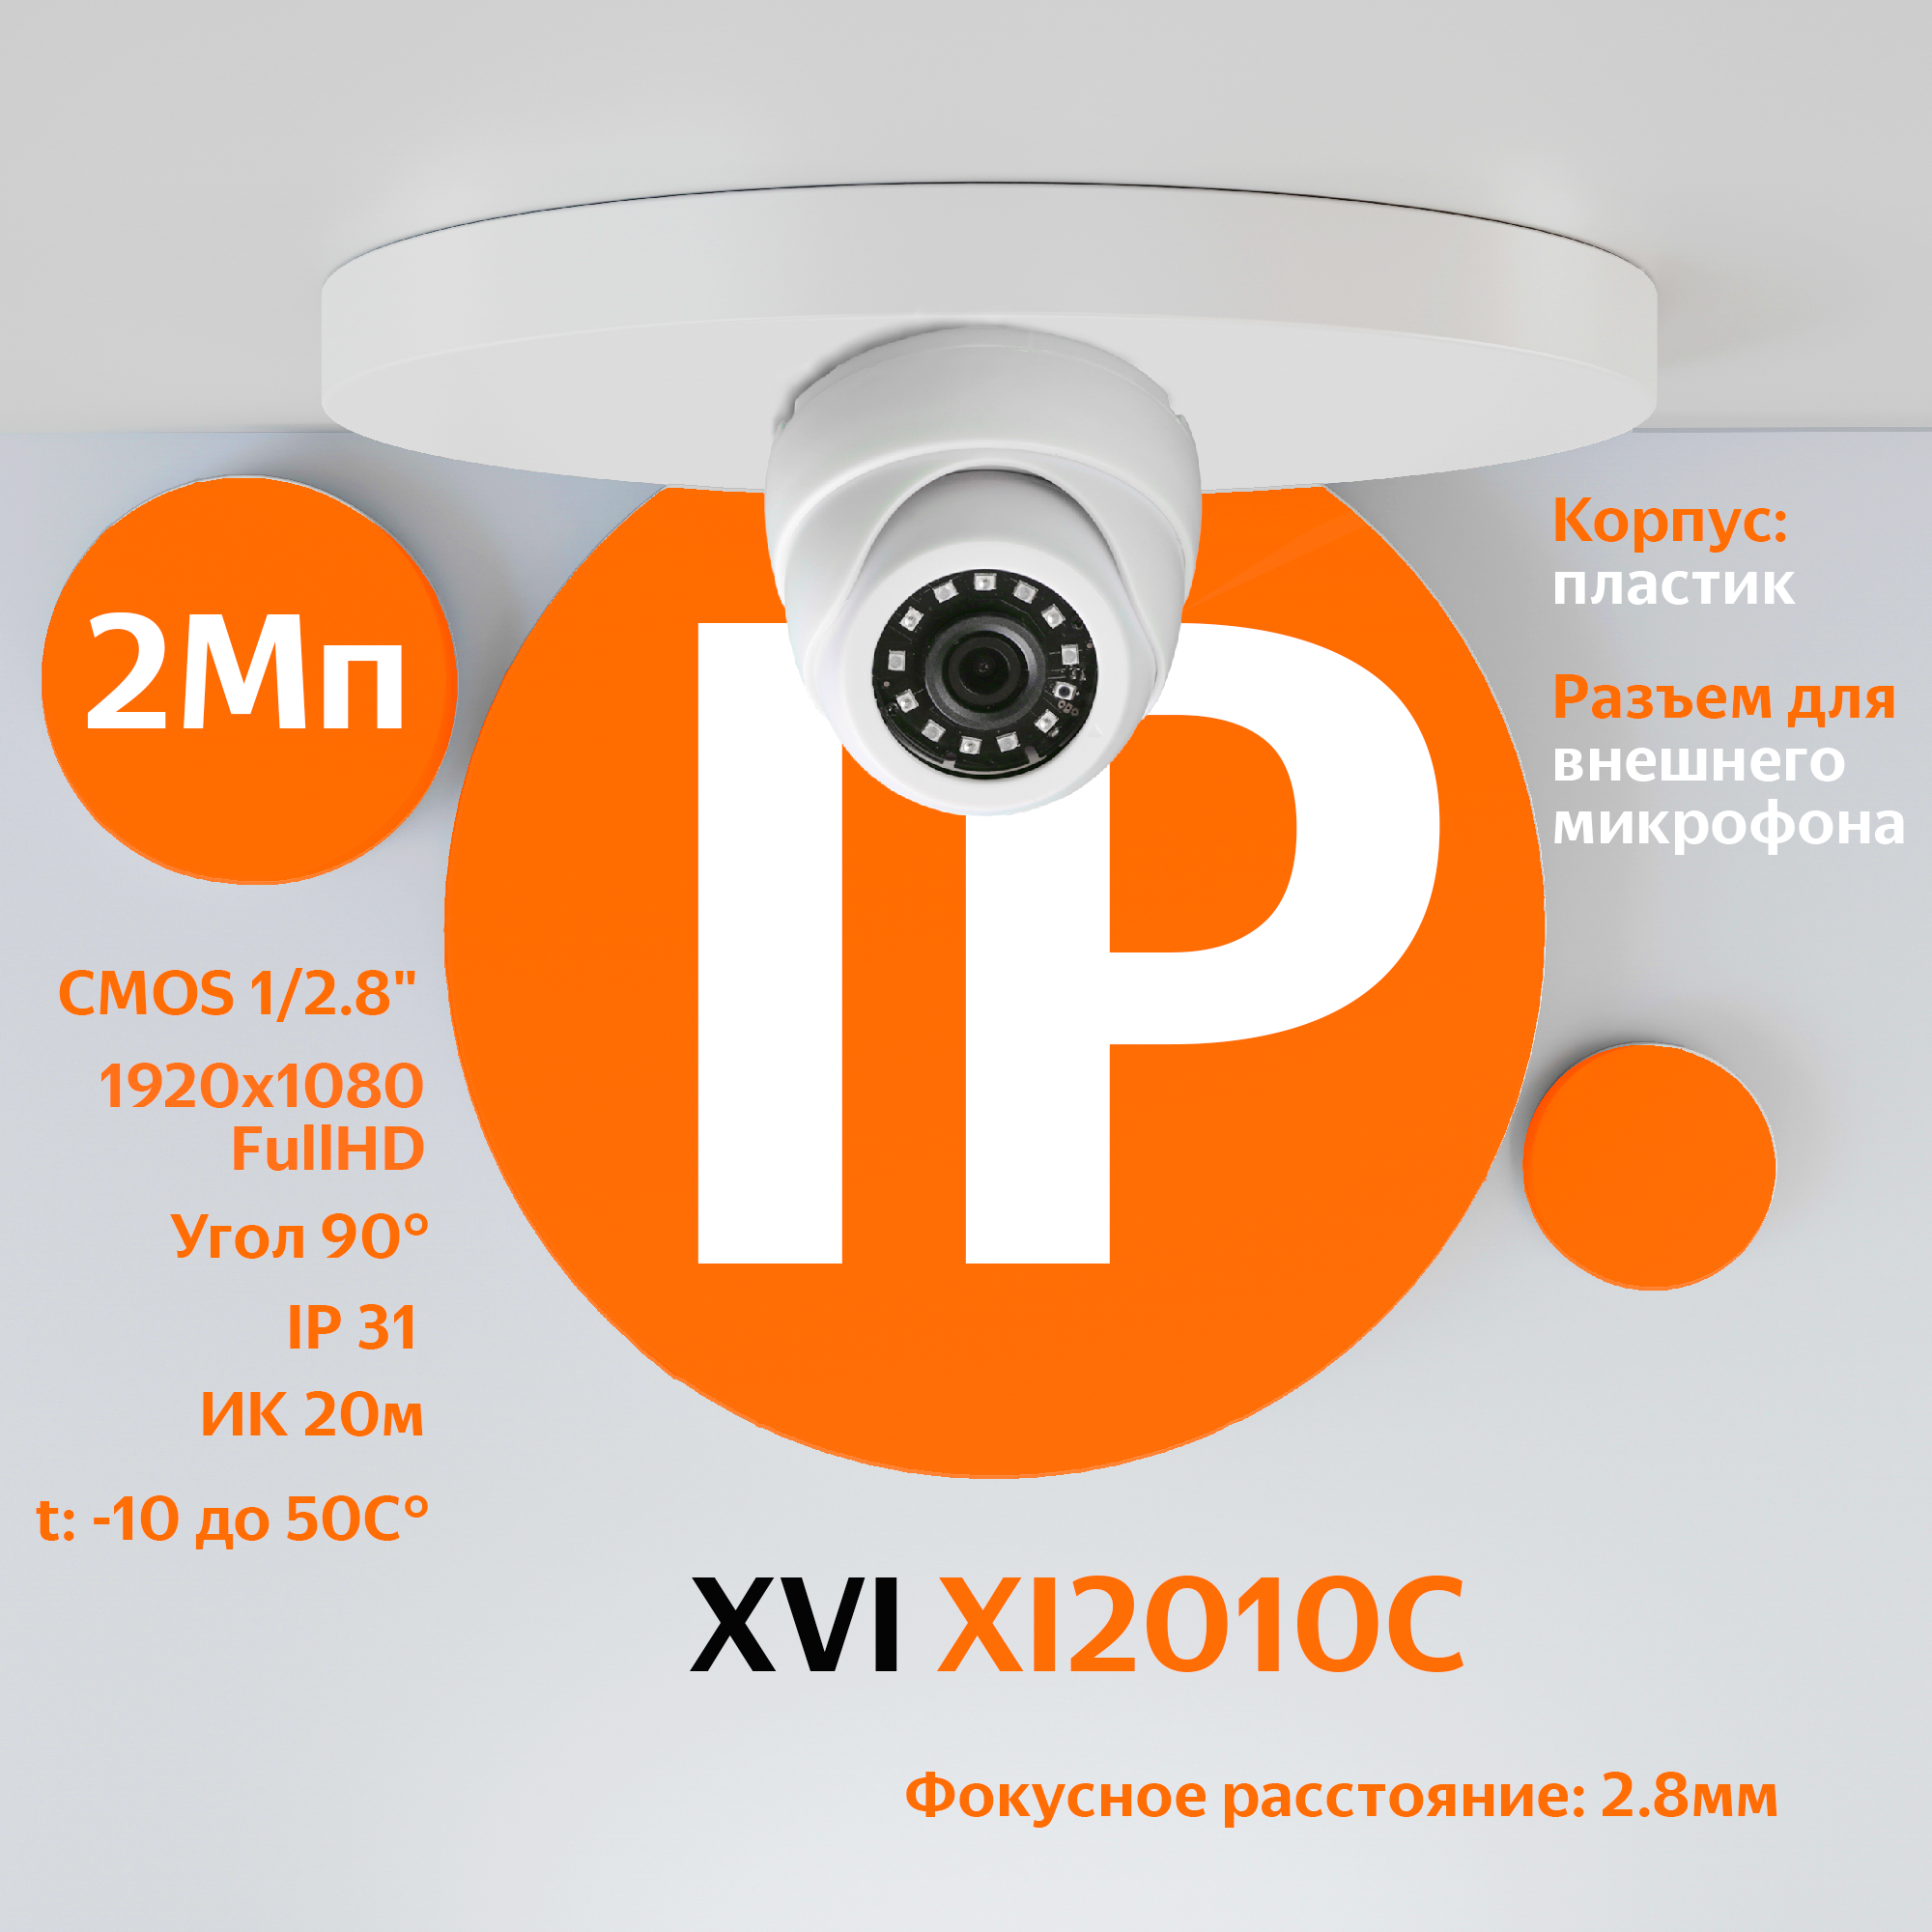 IP камера видеонаблюдения XVI XI2010C (2.8мм), 2Мп, ИК подсветка, вход для микрофона